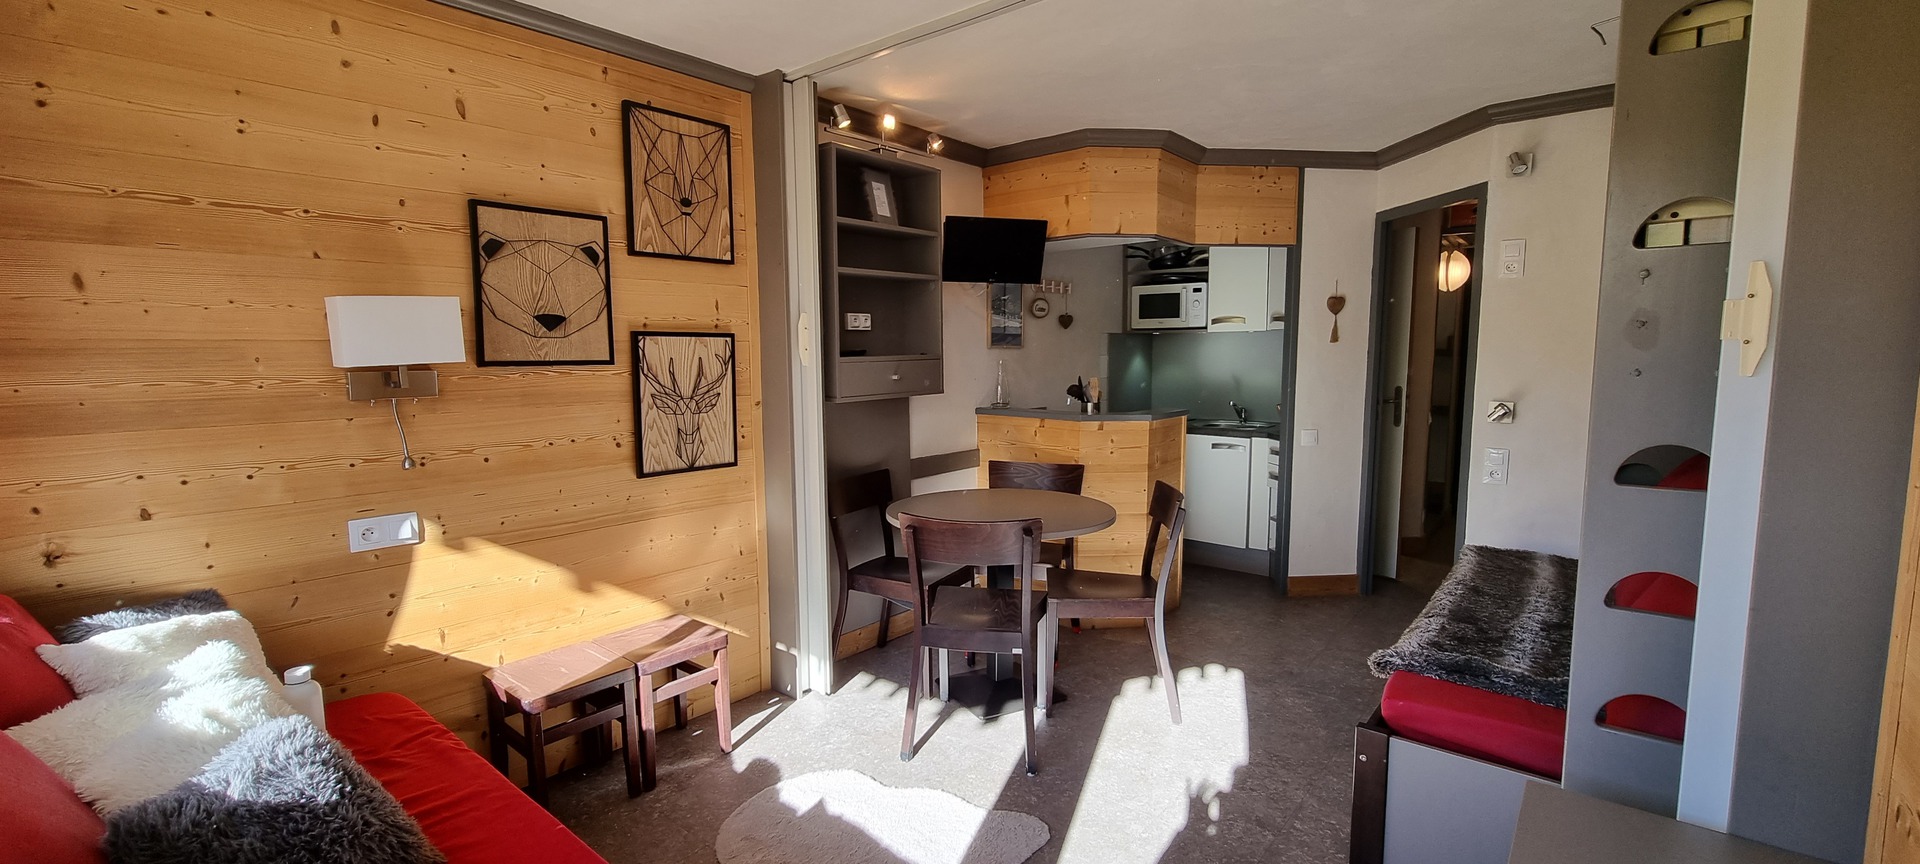 Studio 4 personnes Confort - travelski home choice - Appartements FLÈCHE - Plagne - Aime 2000